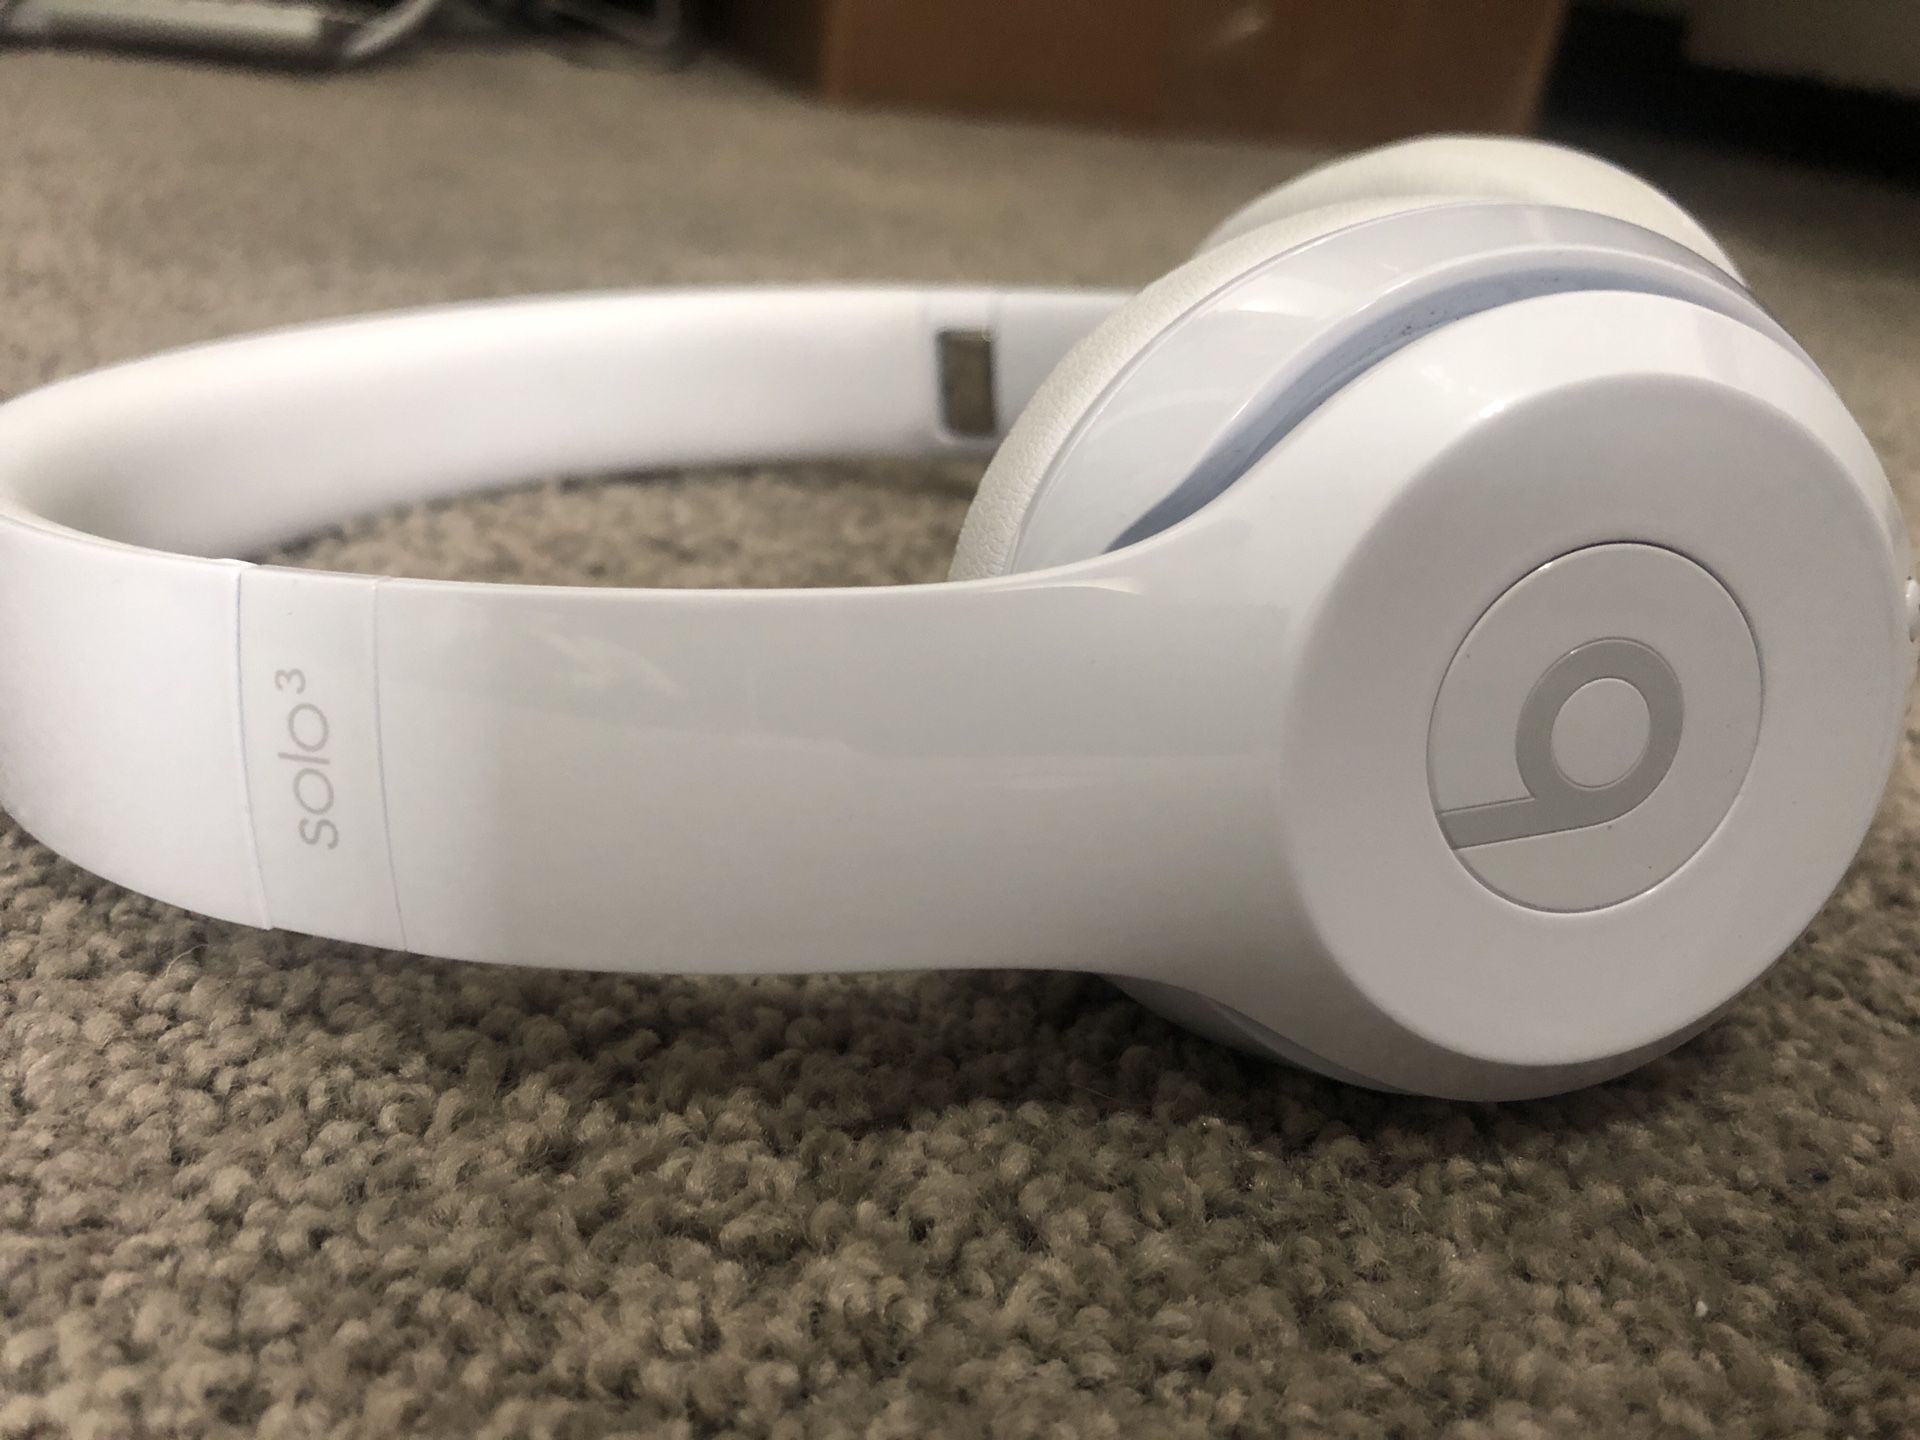 Beats Solo3 wireless headphones - white